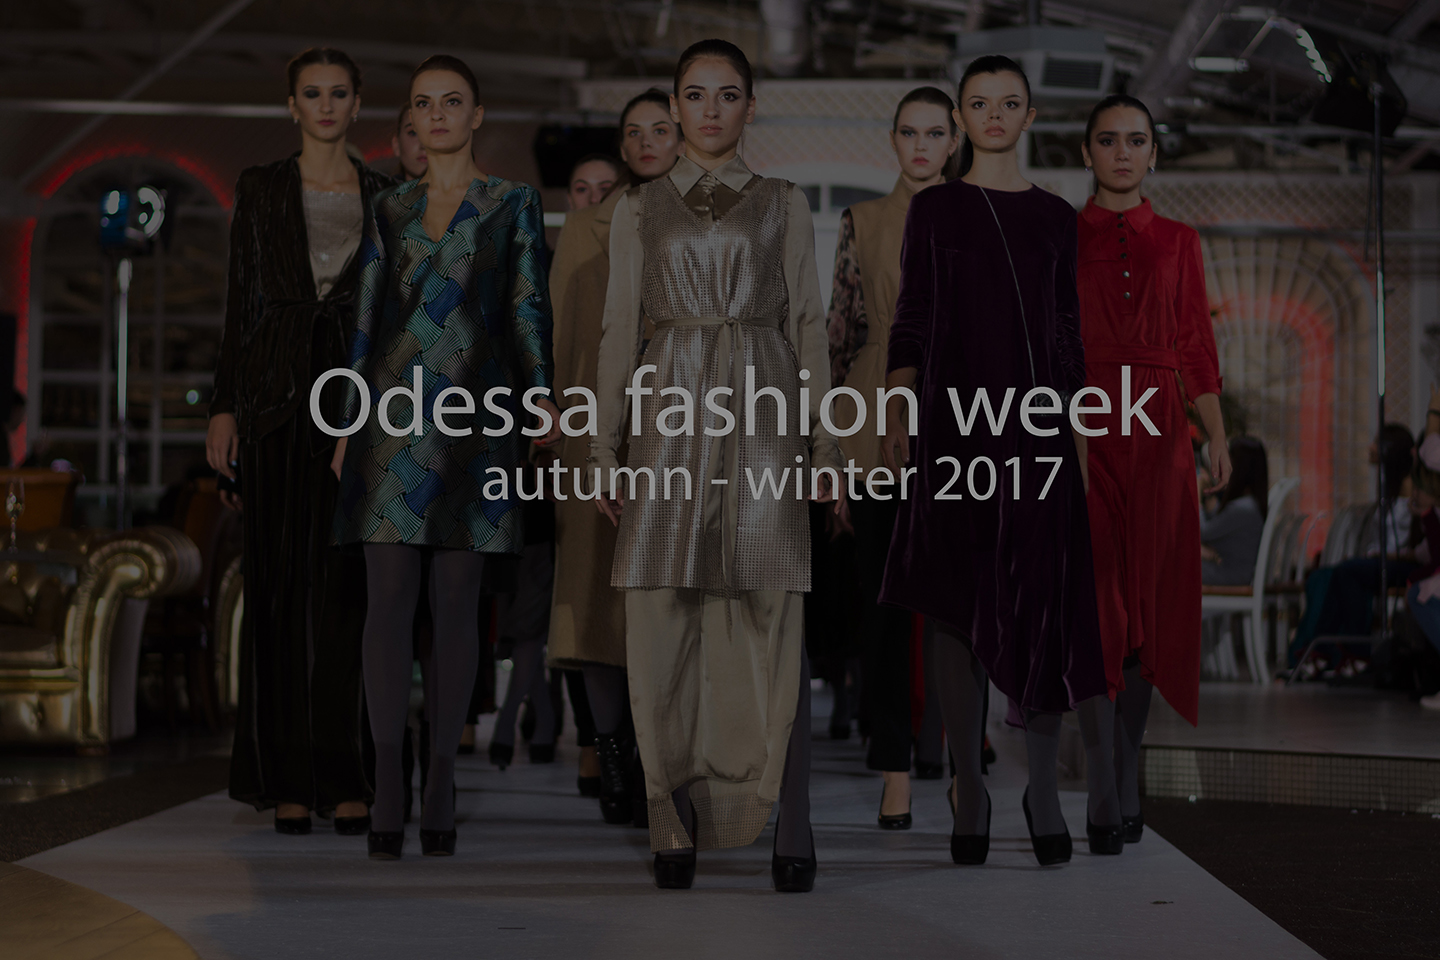 Odessa fashion week 2017